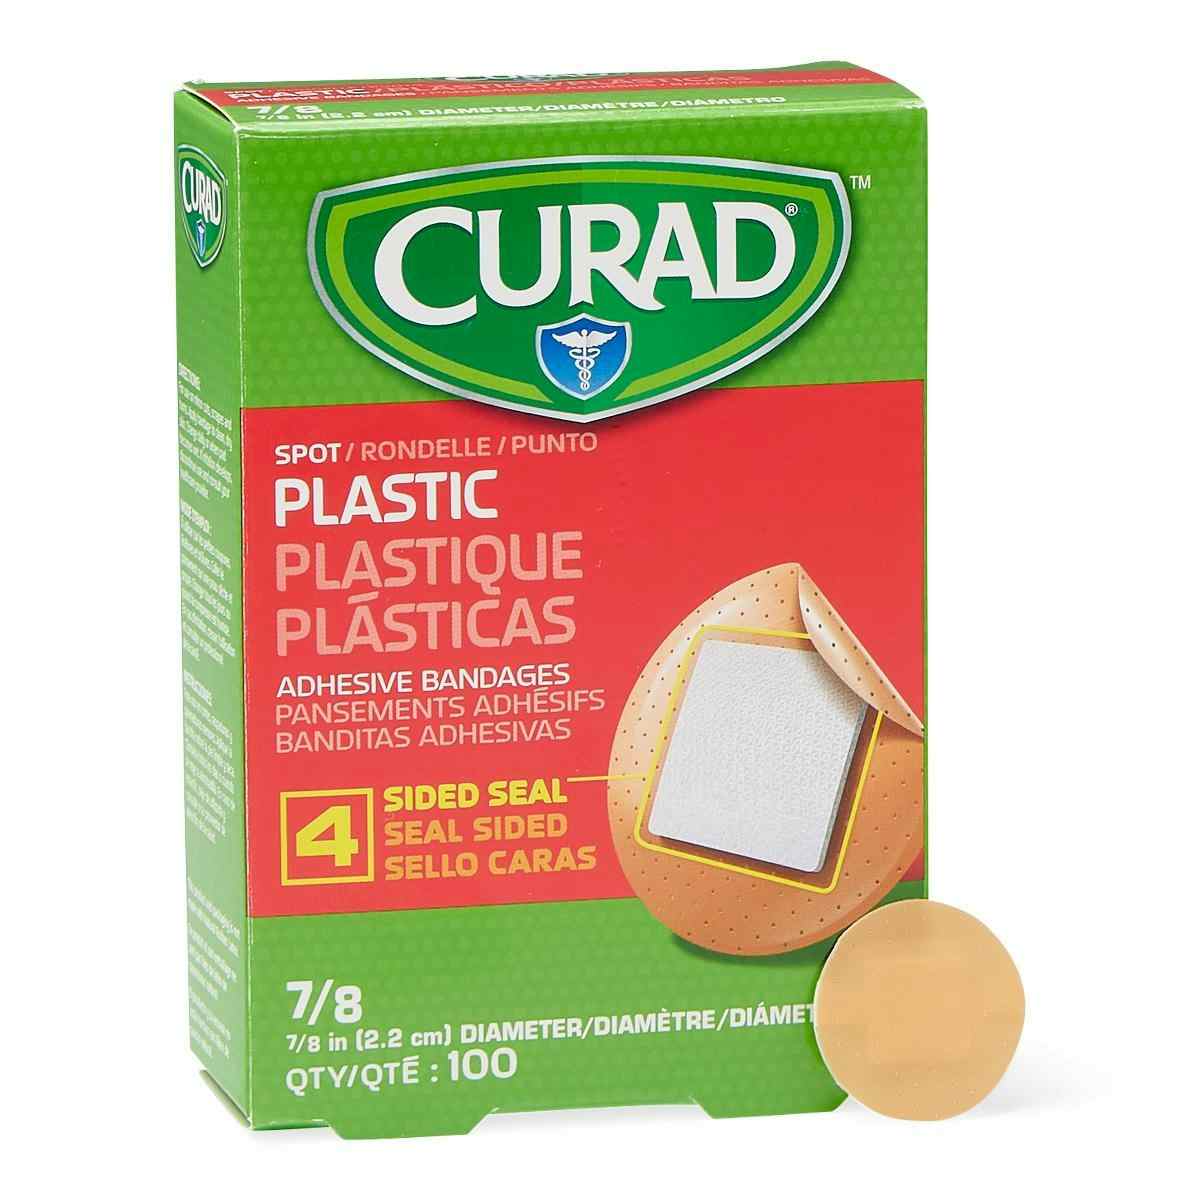 Curad Plastic Adhesive Bandages, NON25501, 7/8" dia. - Case of 1200